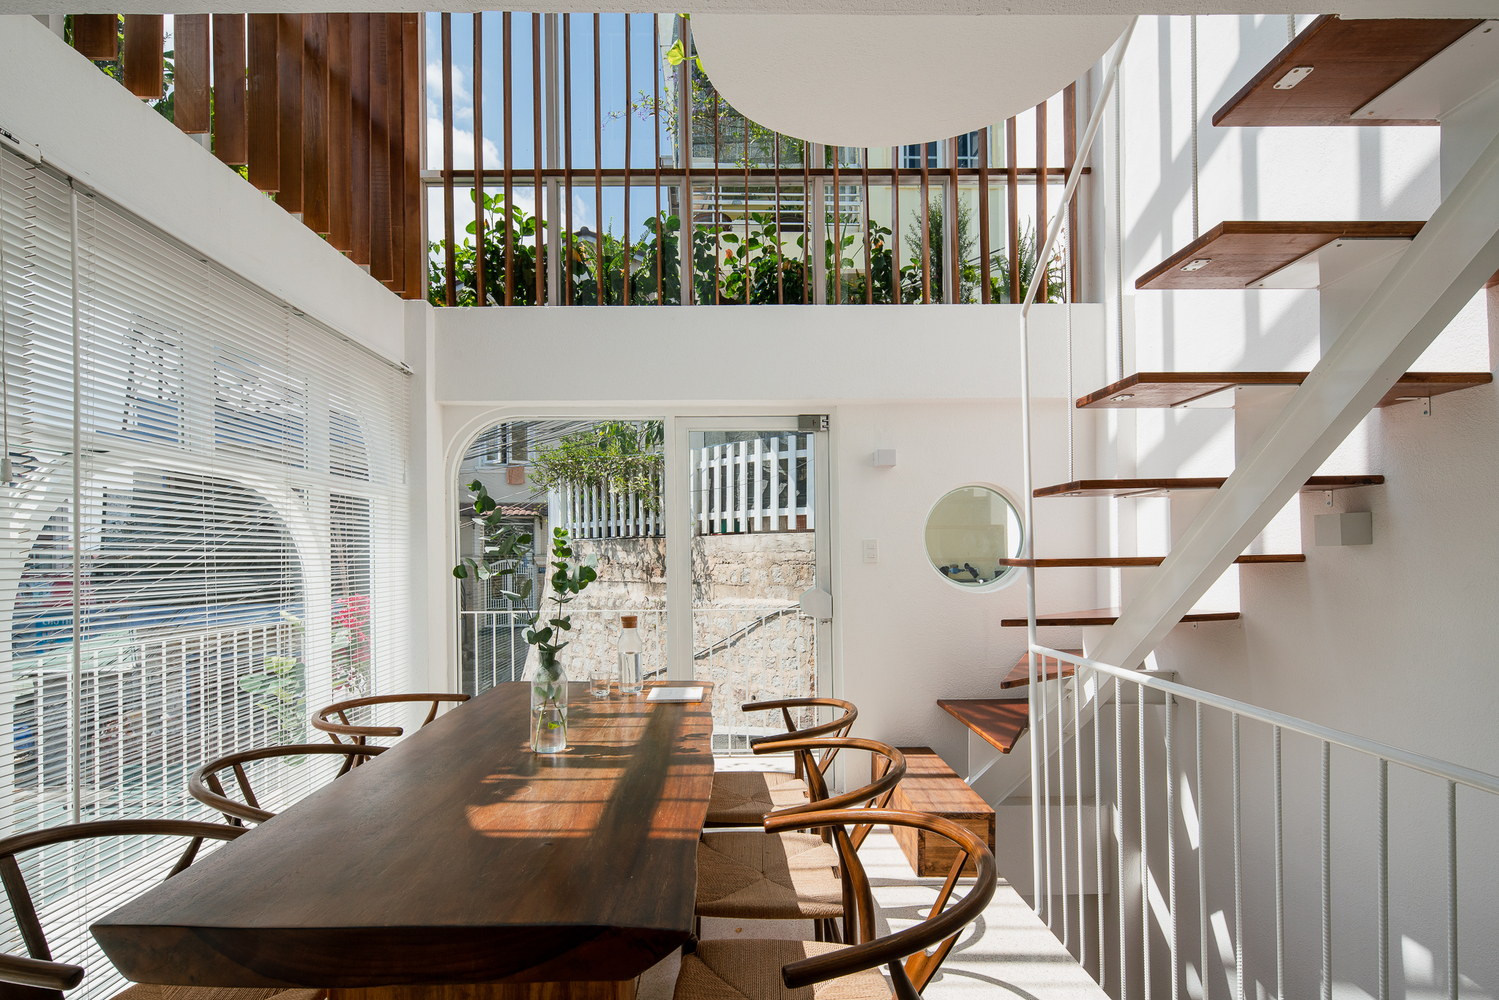 Hình ảnh không gian phòng ăn ngập tràn ánh sáng với bàn ghế gỗ, lam gỗ, cửa sổ kính trong suốt, cạnh đó là cầu thang dẫn lên tầng trên